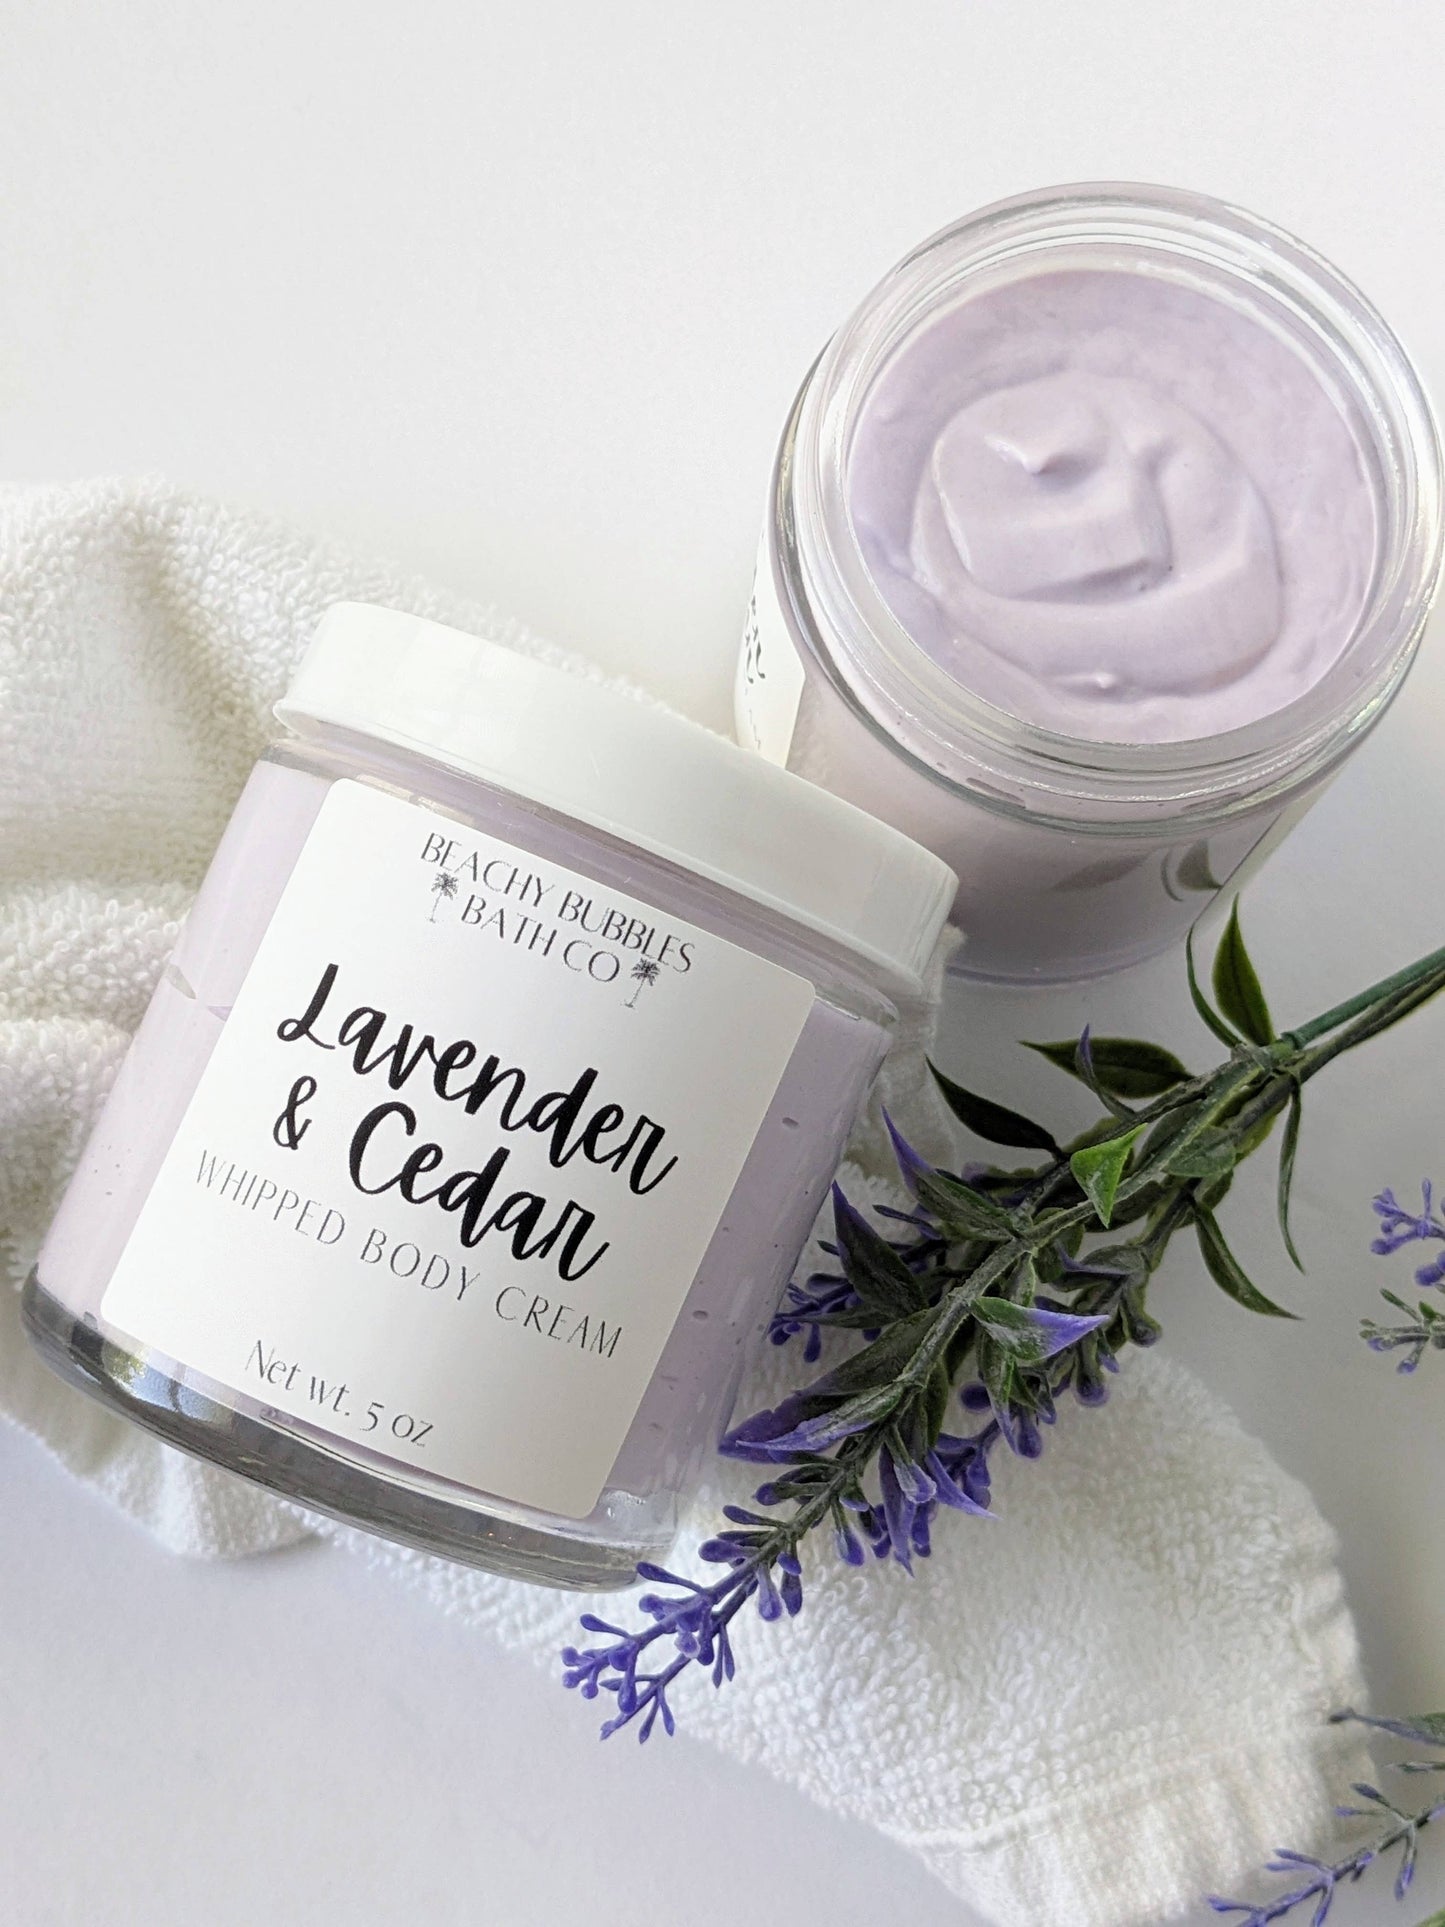 Krem - Lavender & Cedar Whipped Body Cream